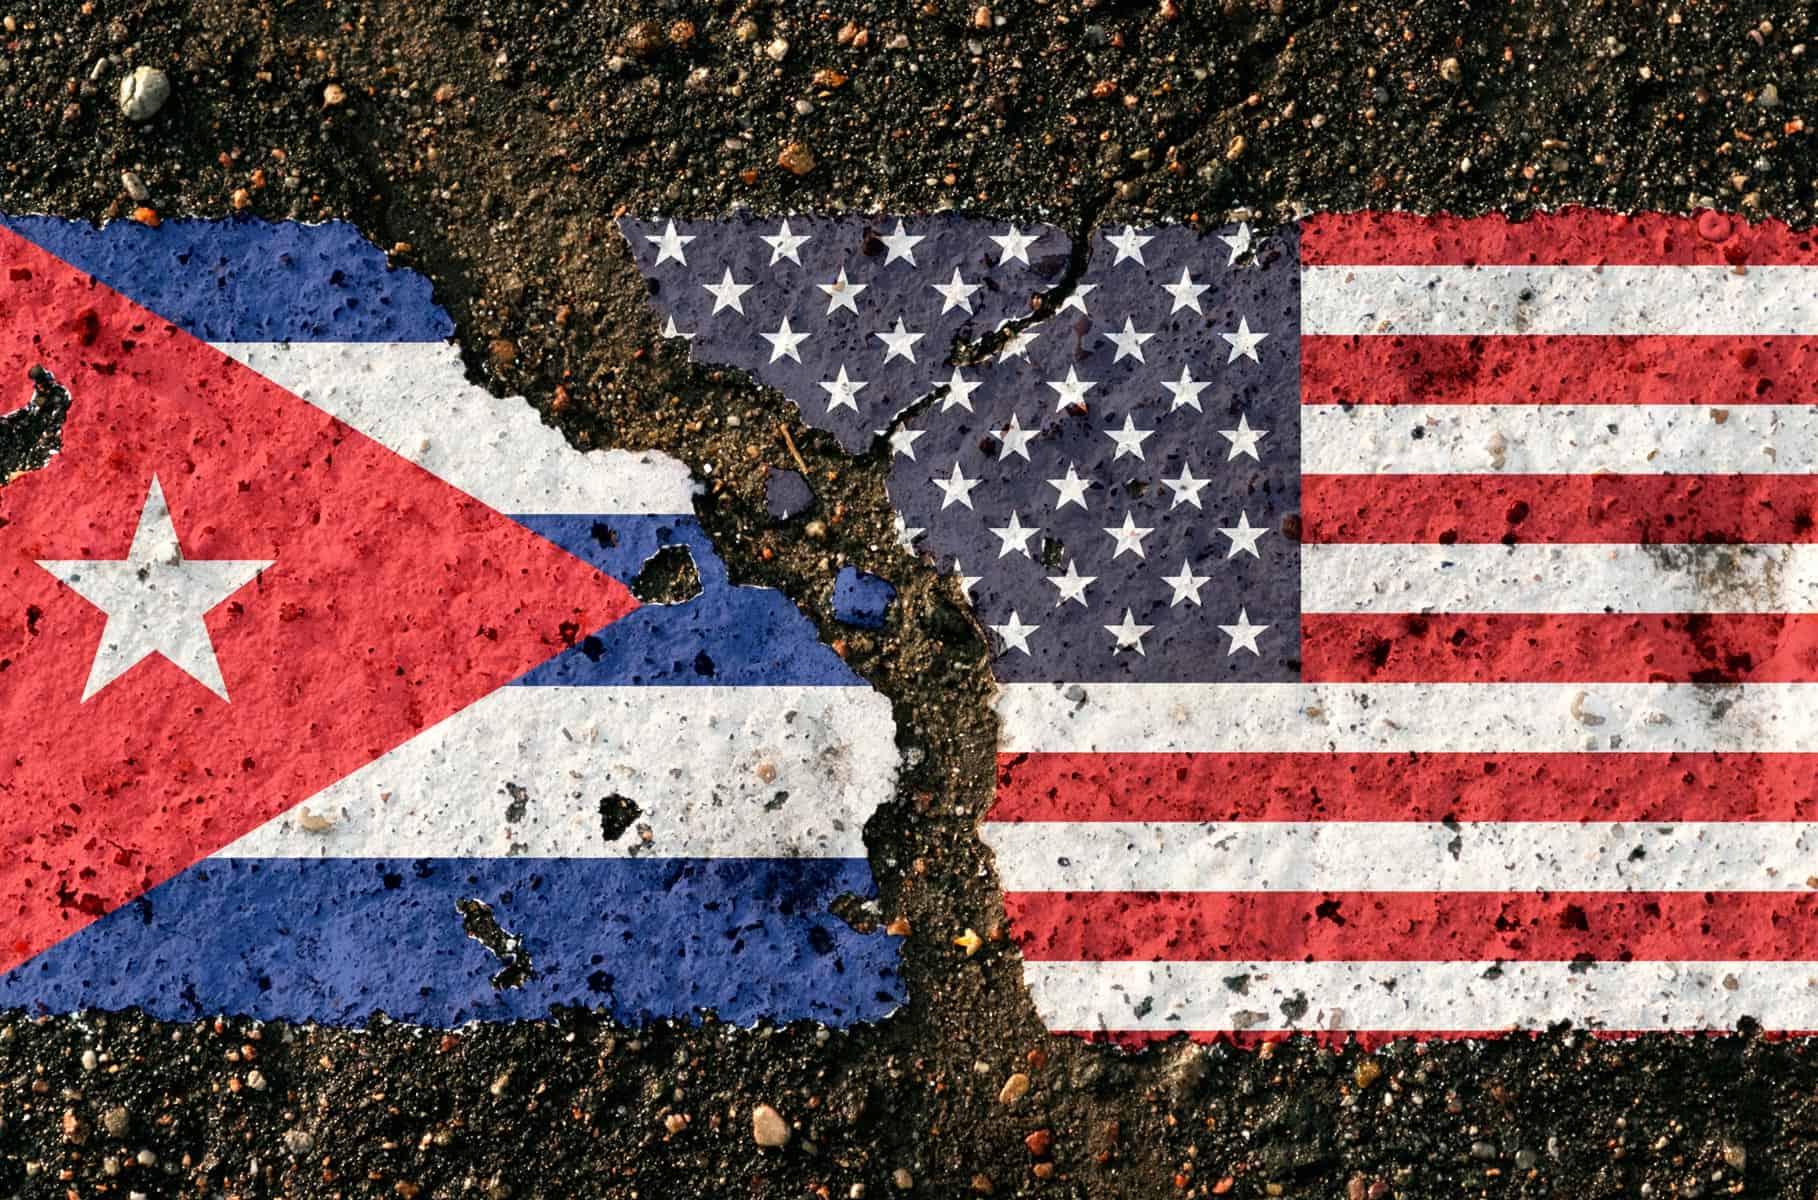 Legisladores de un Estado Norteamericano Abogan por Mejorar las Relaciones con Cuba